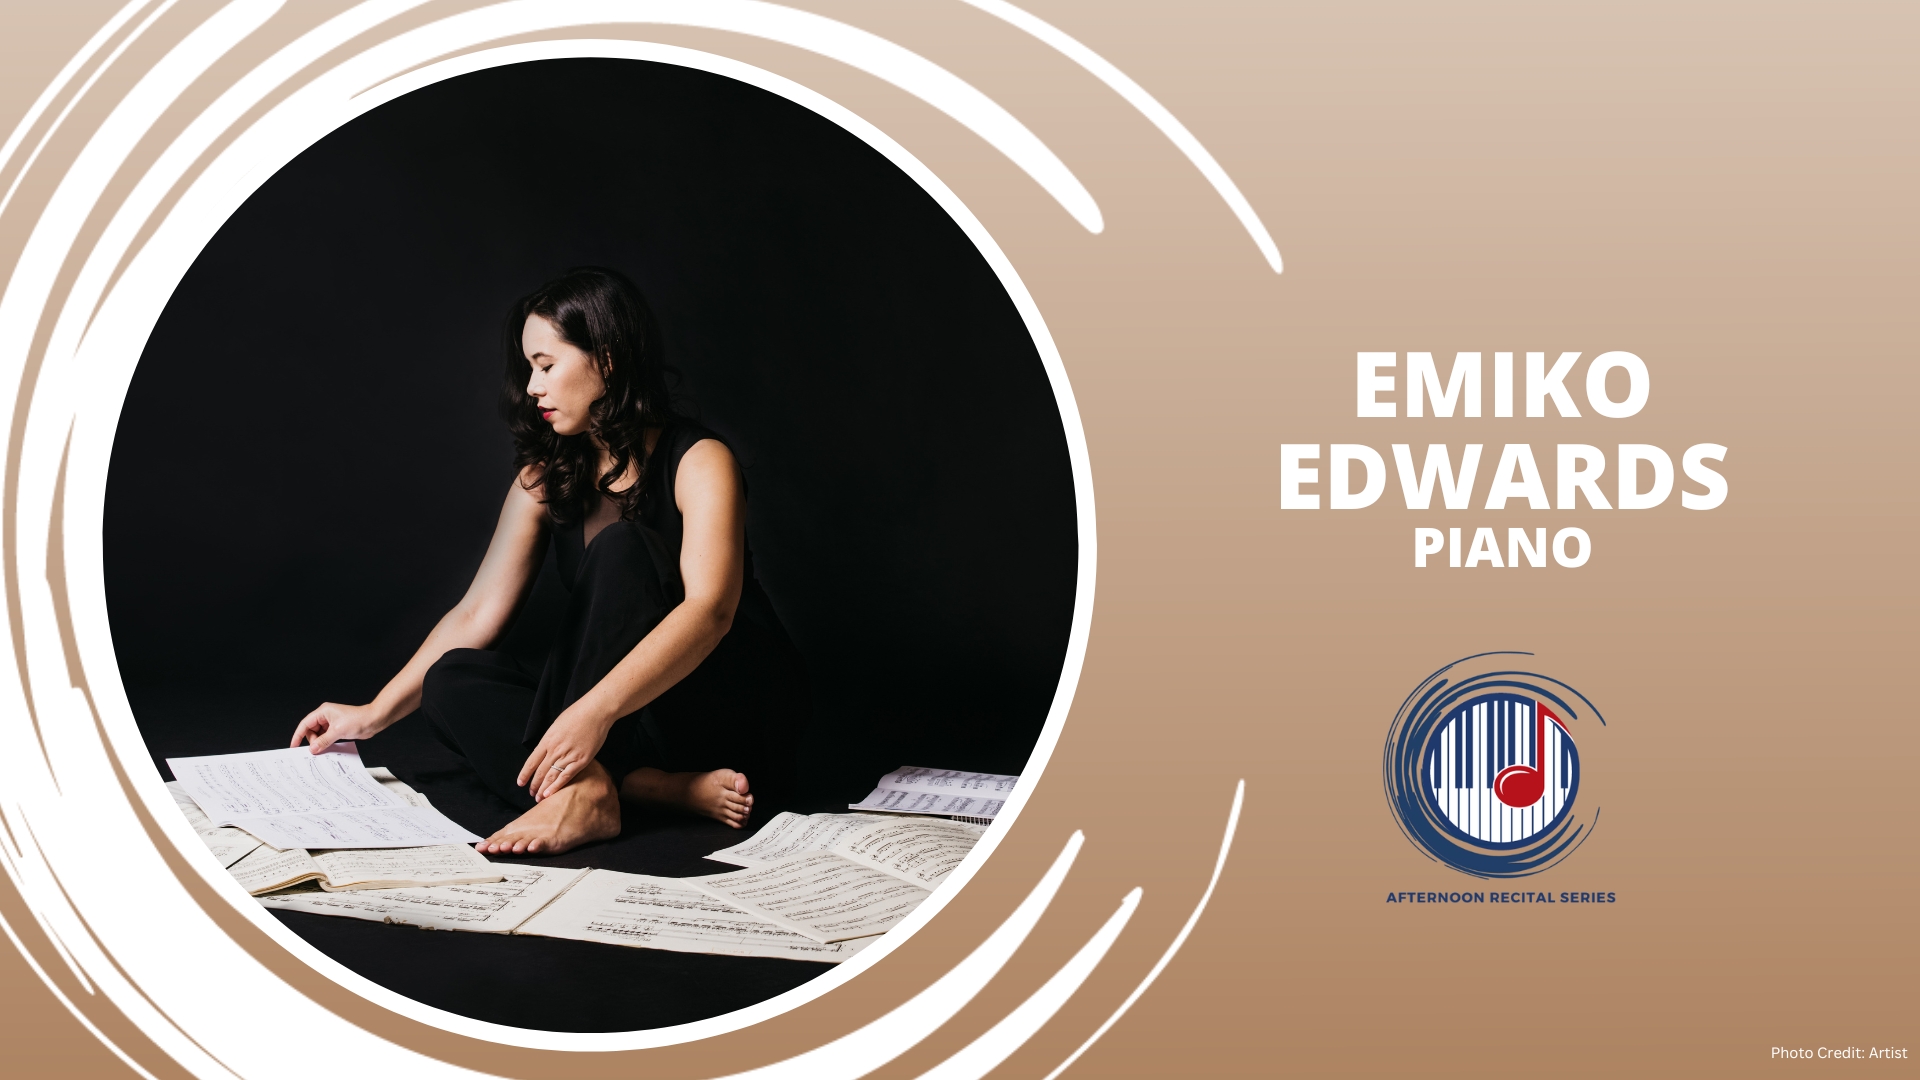 Emiko Edwards